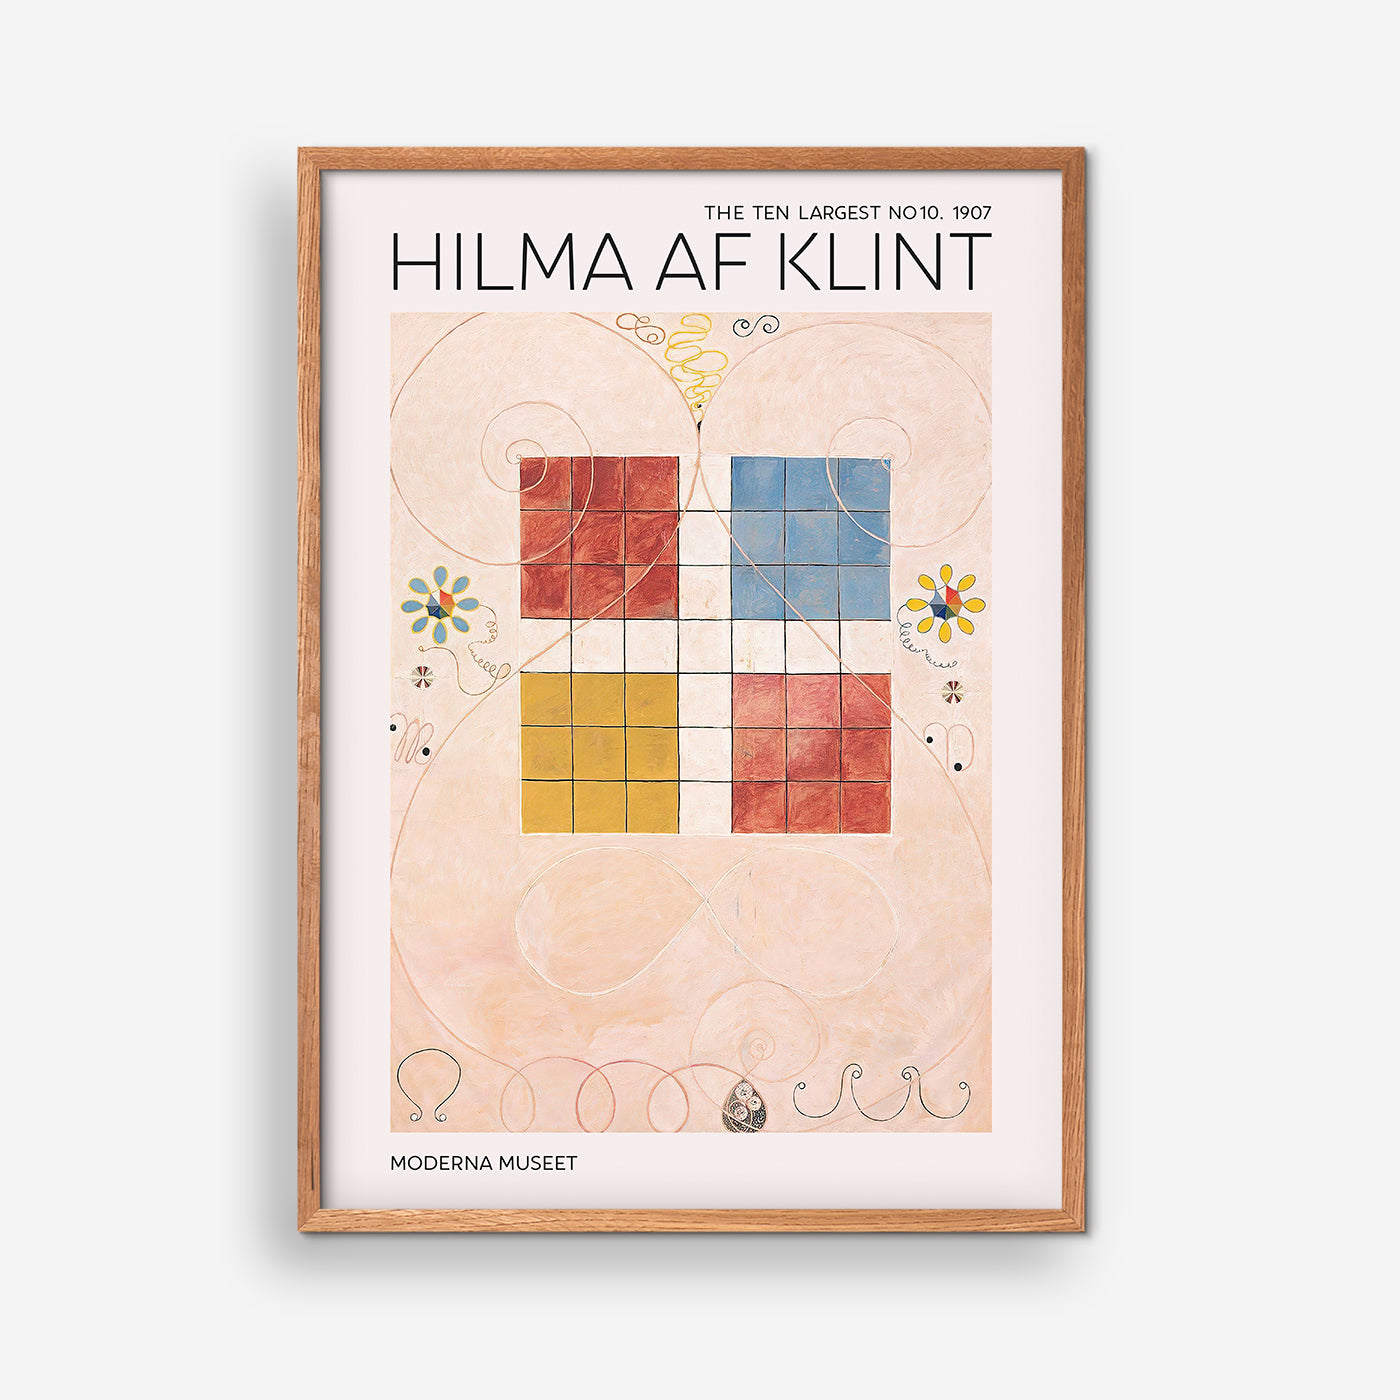 Hilma Af Klint - The Ten Largest NO. 10